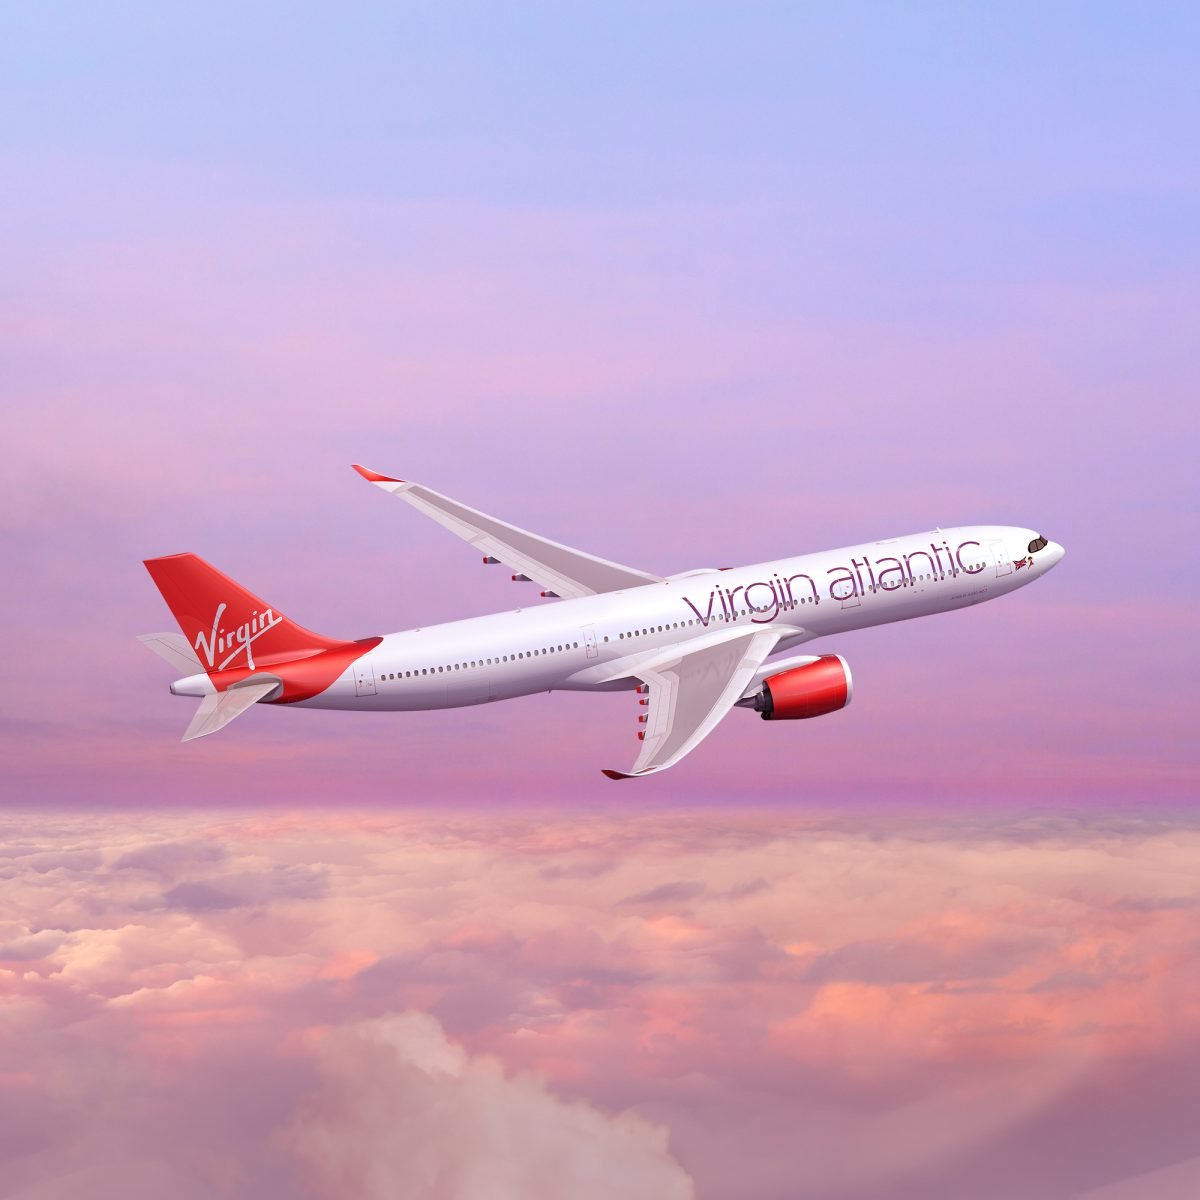 Virgin Atlantic biedt klanten gratis coronavirusverzekering